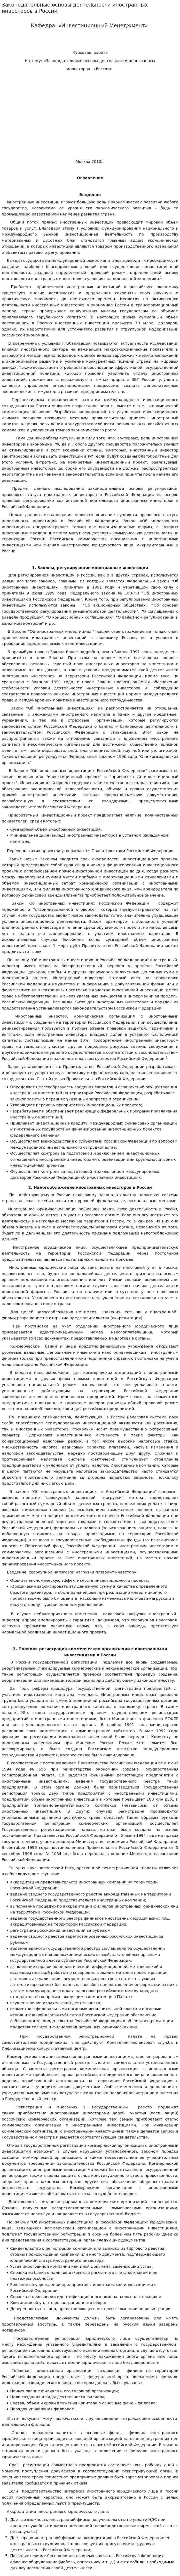 Законодательные основы деятельности иностранных инвесторов в России. 2